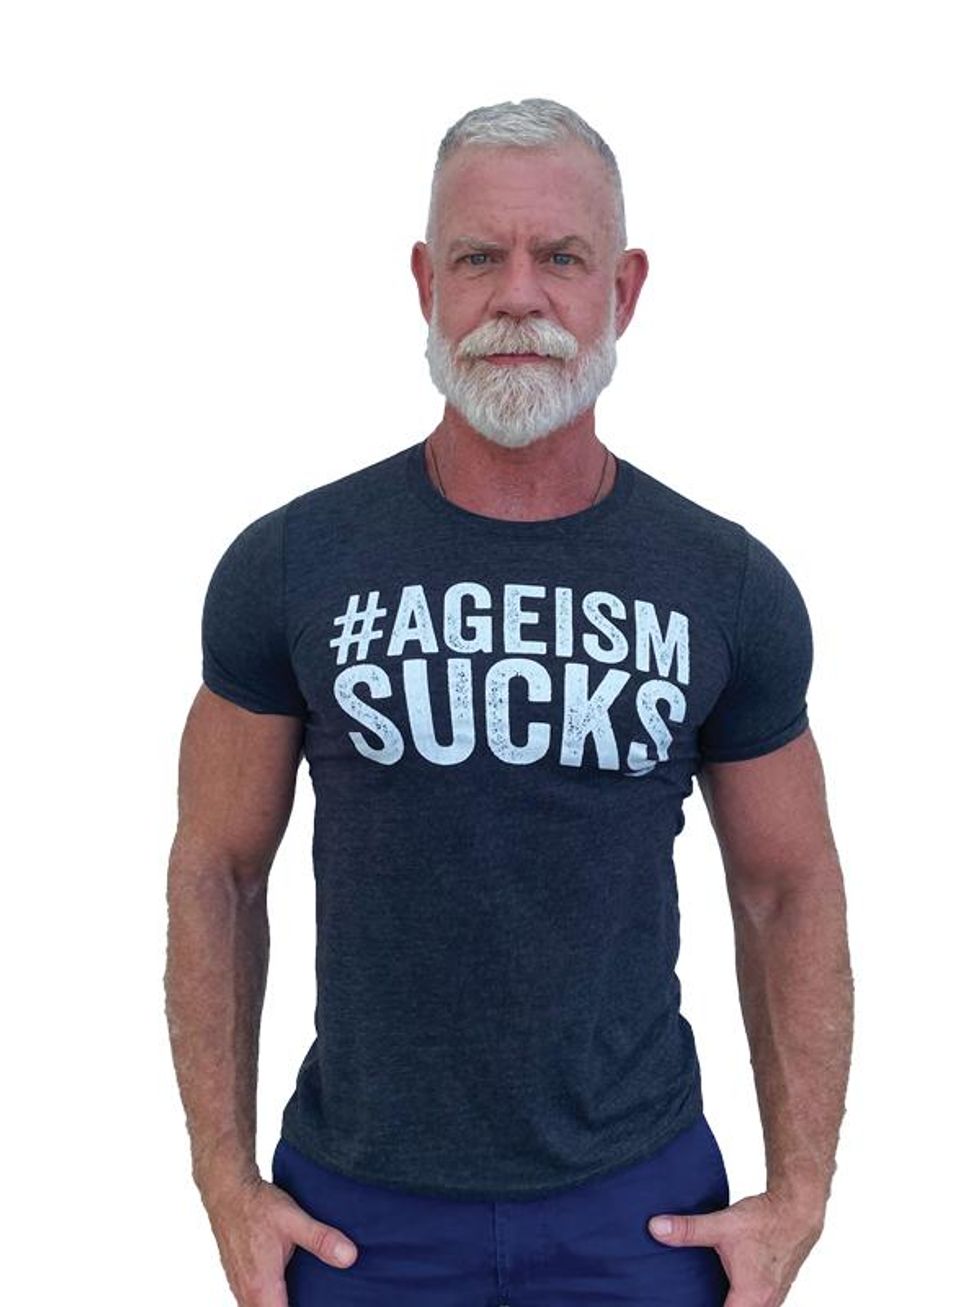 Ageism sucks